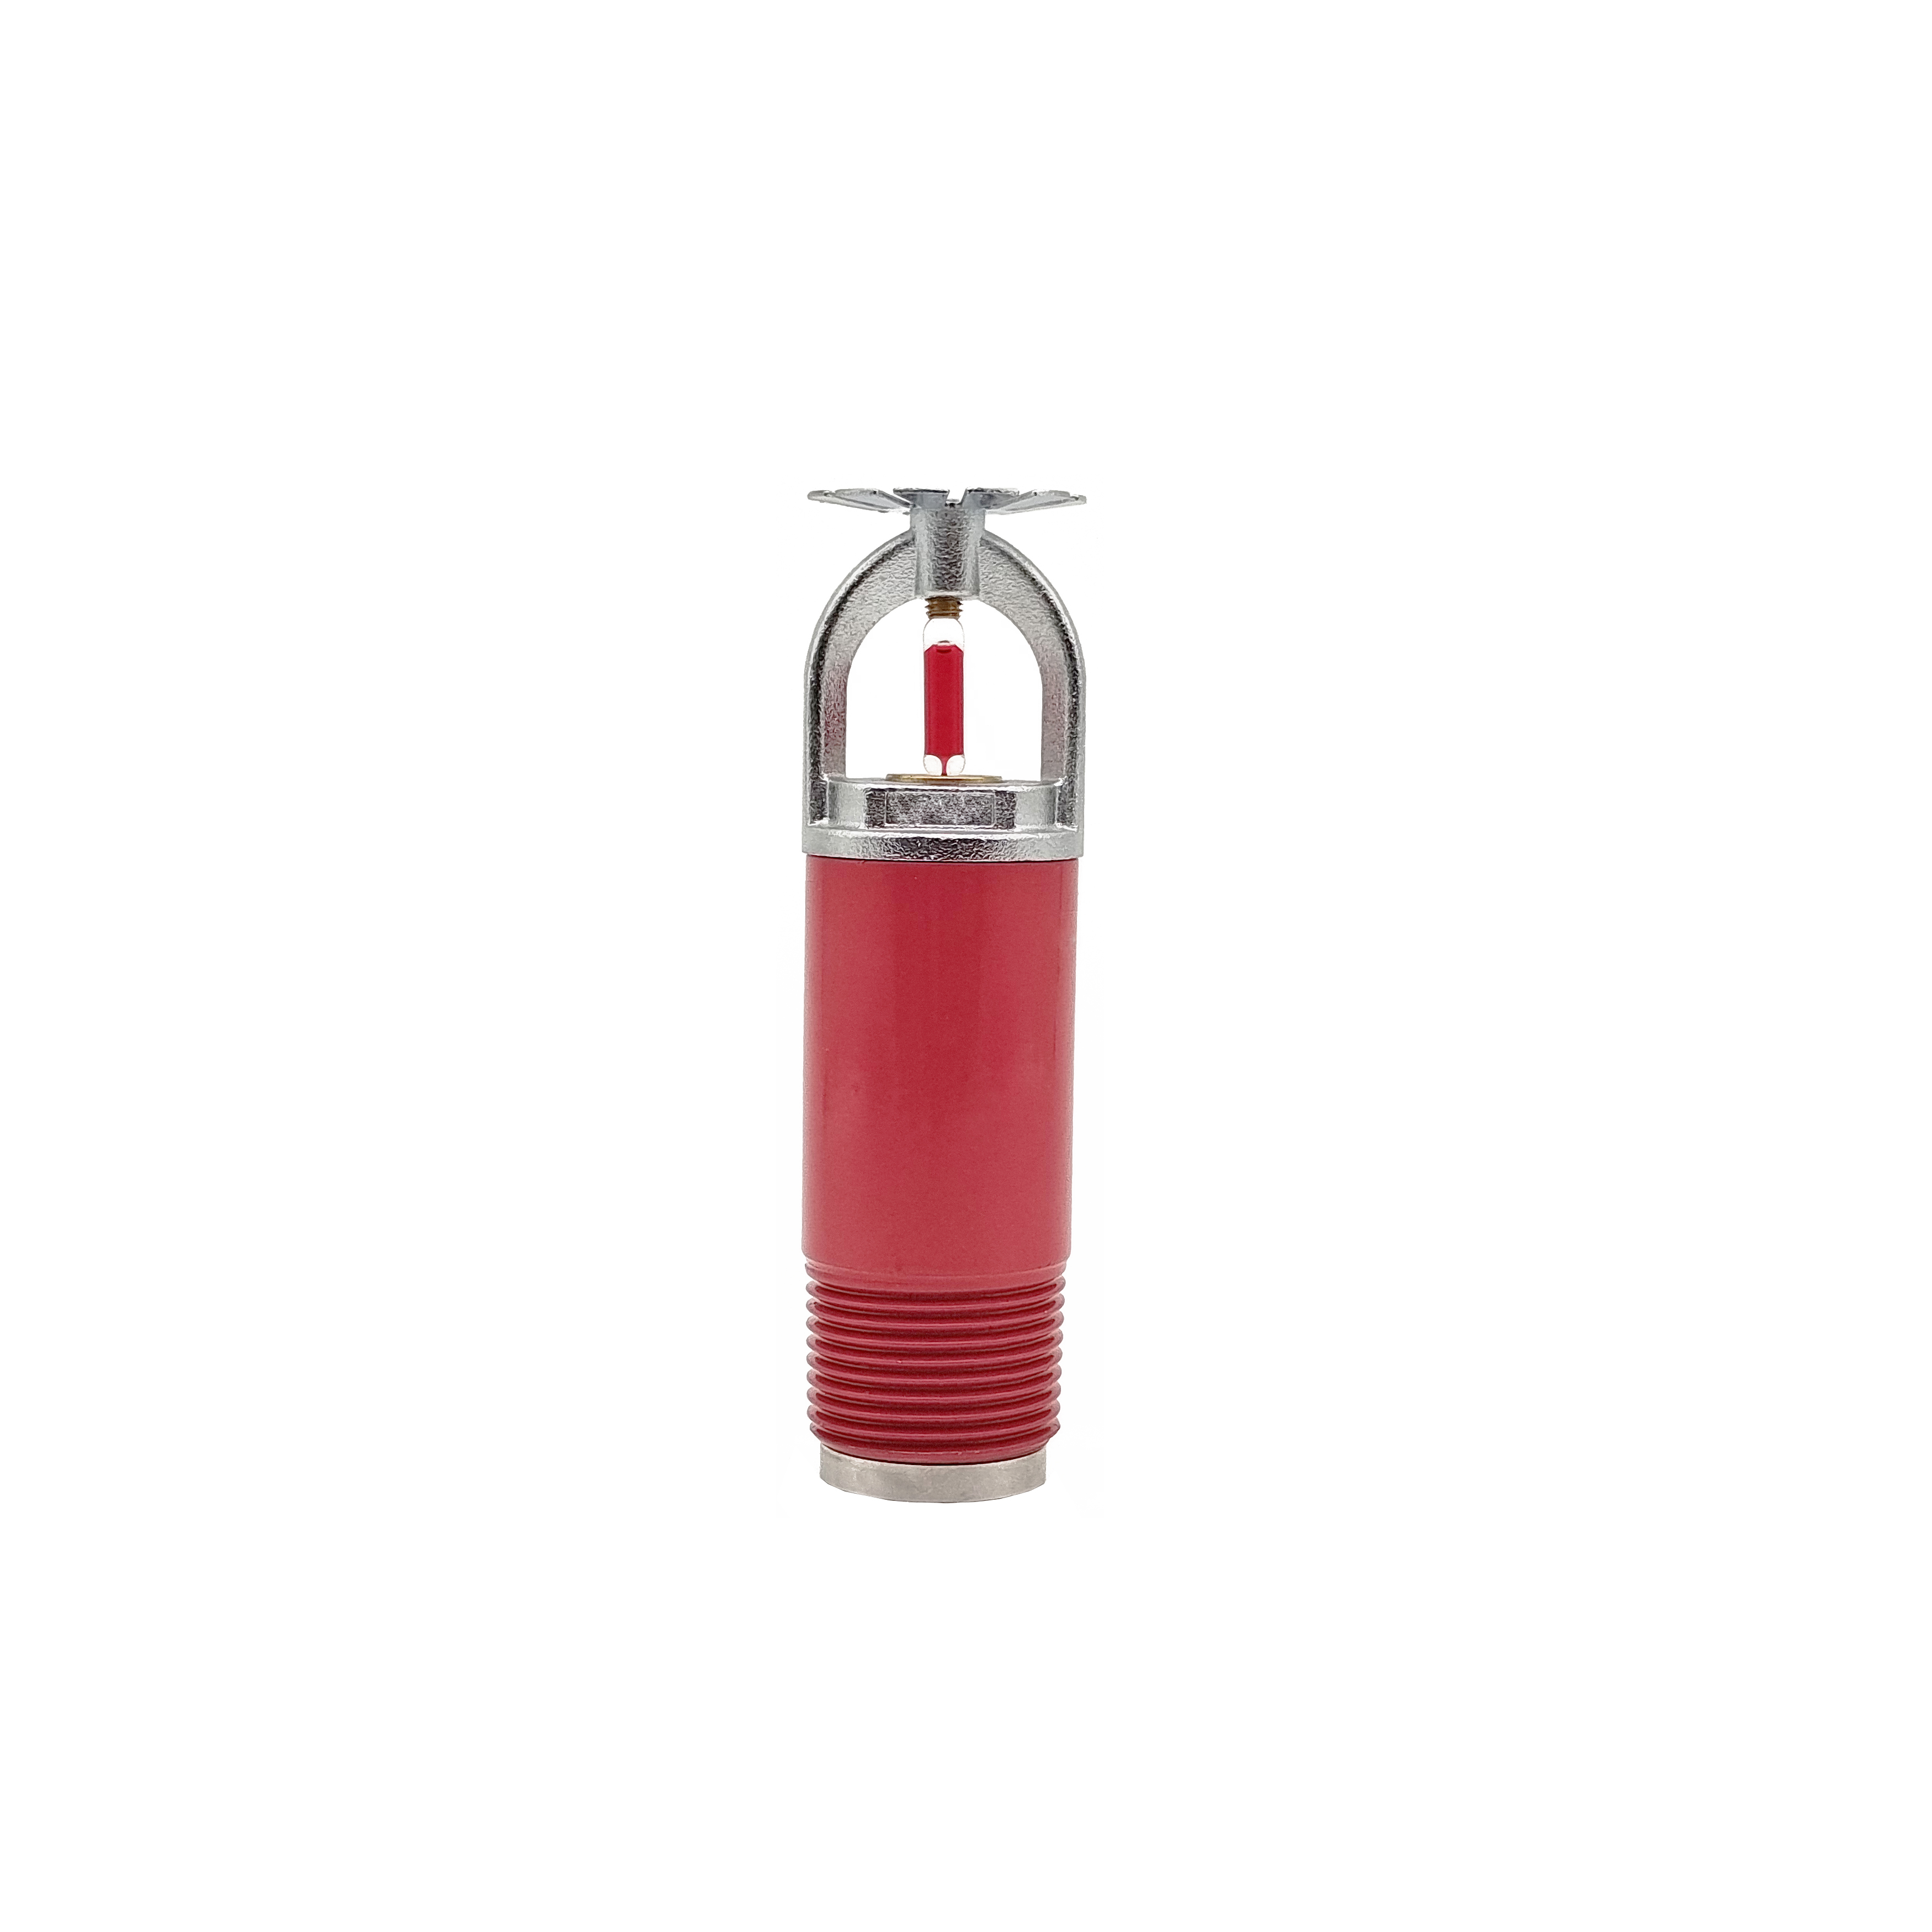 Spërkatës varëse e thatë e personalizuar e furnizuar direkt nga prodhimi i spërkatësve të zjarrit